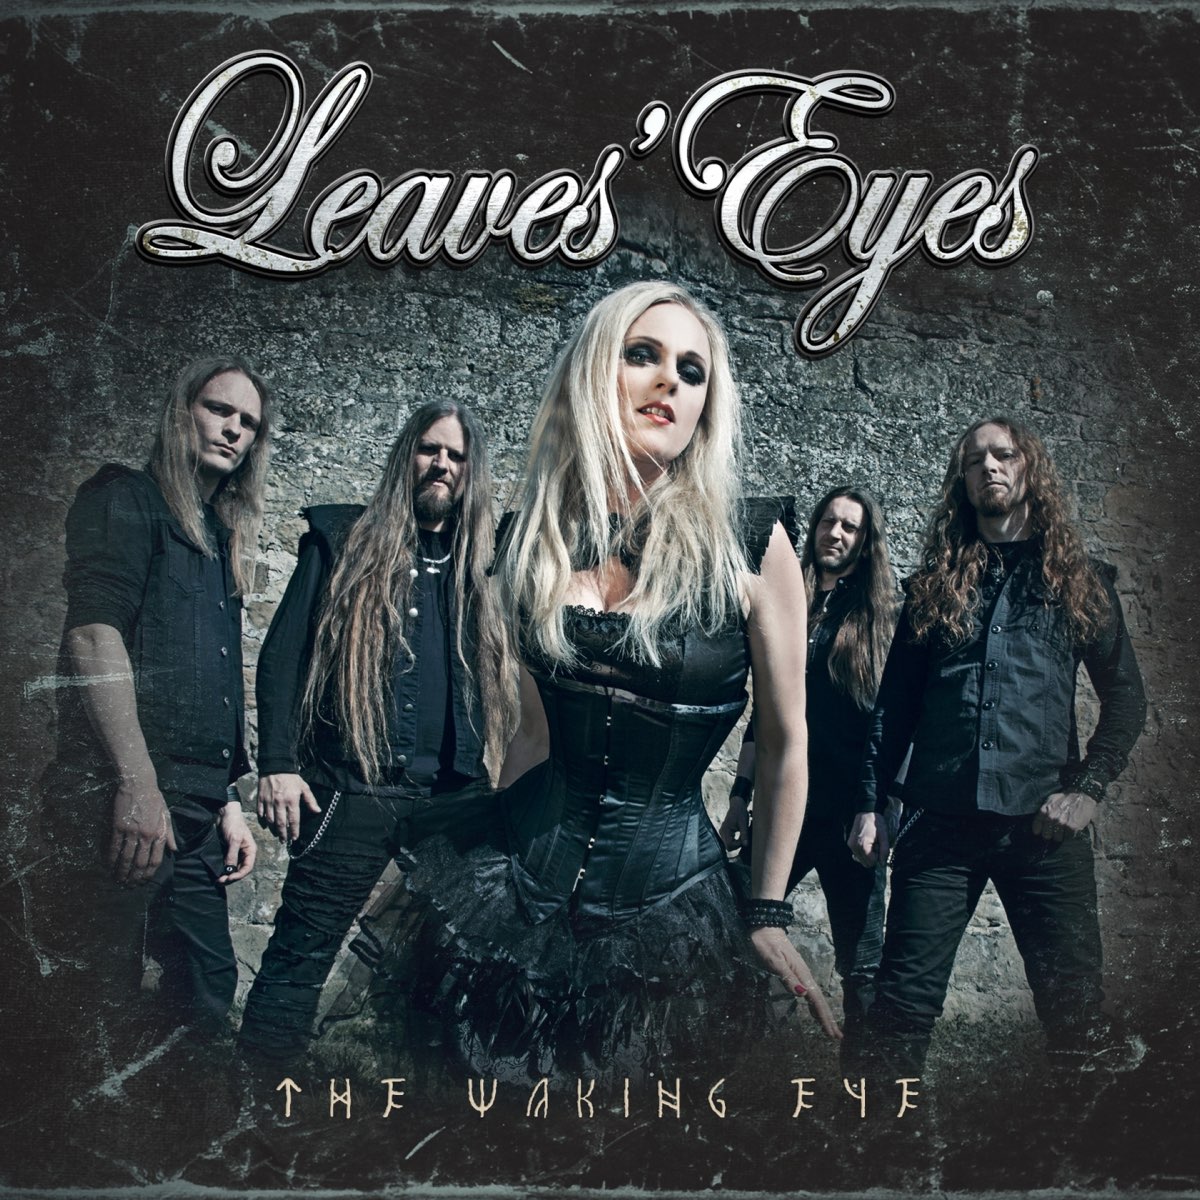 Группа лист слушать. Группа leaves’ Eyes. Группа leaves’ Eyes 2019. Leaves' Eyes 2015 King of Kings. Leaves' Eyes - discography.